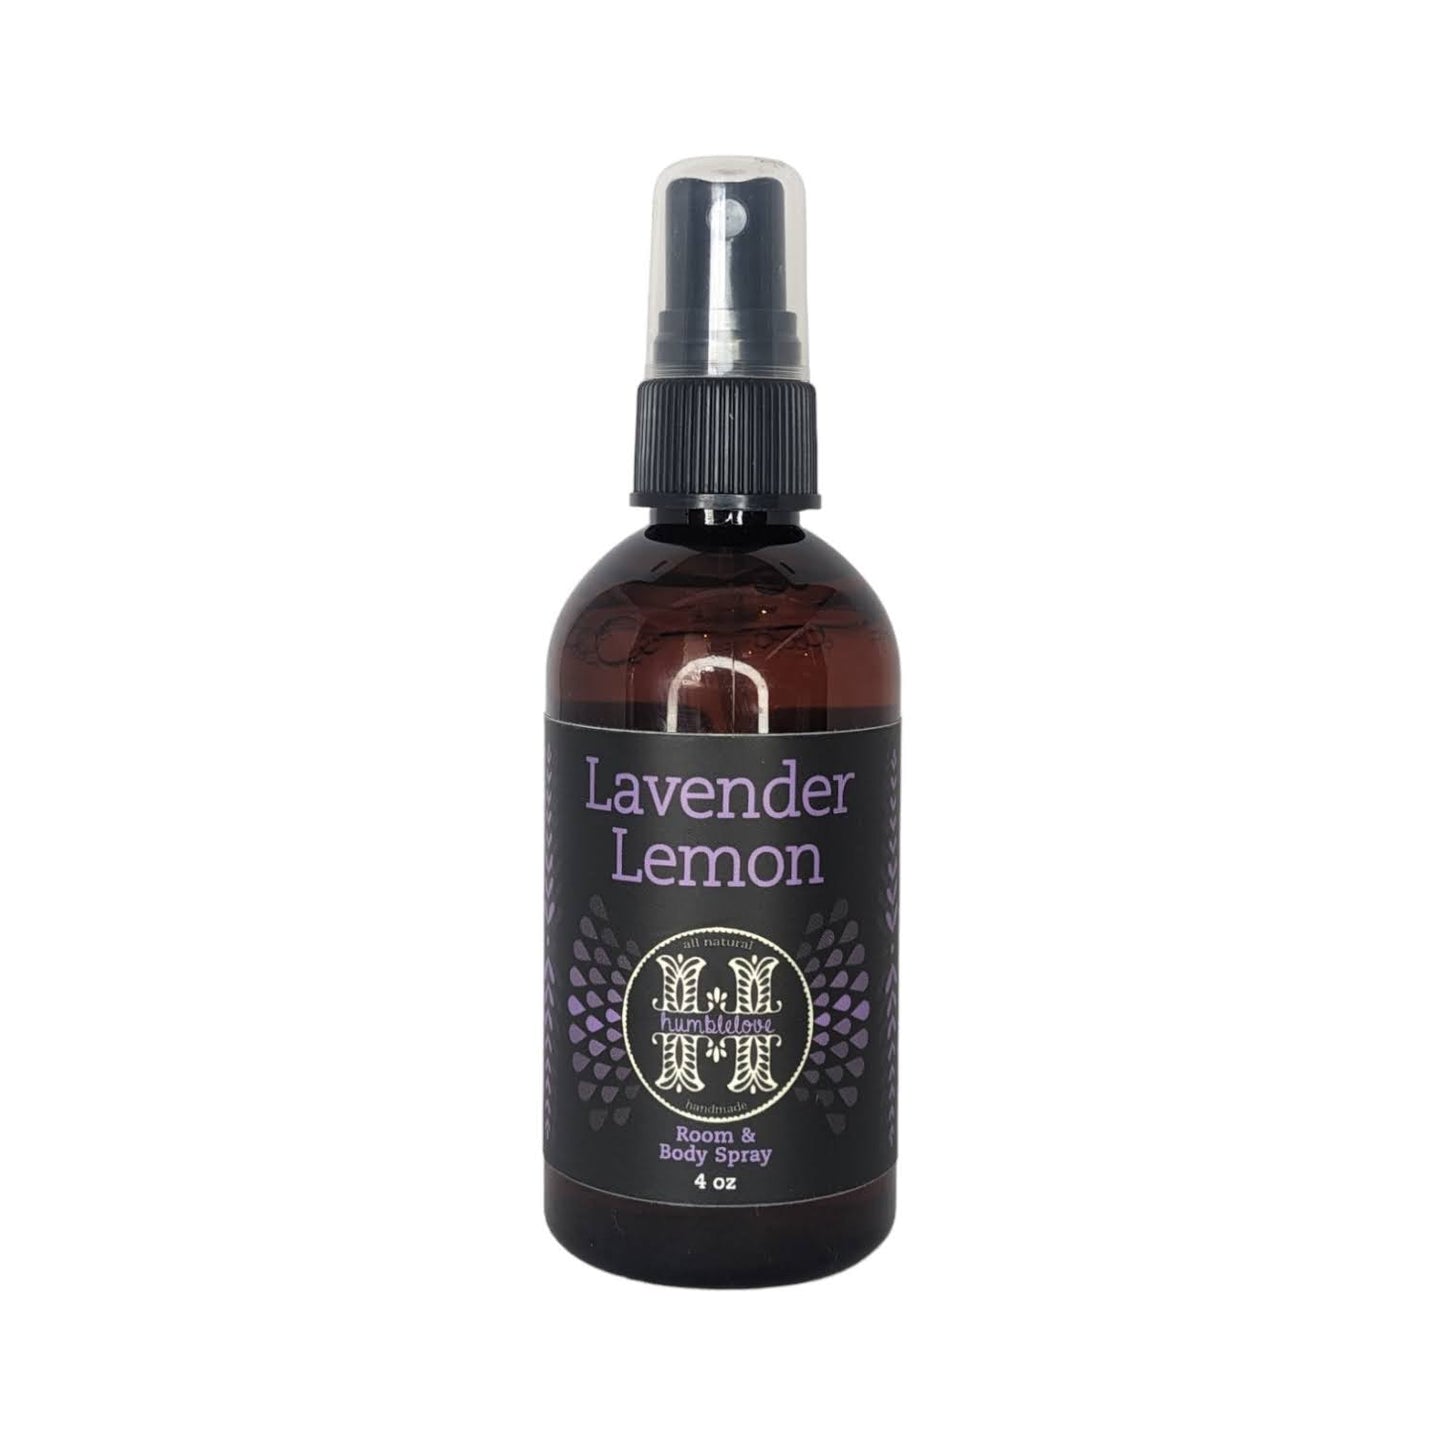 Lavender Lemon Room and Body Spray - 4 oz